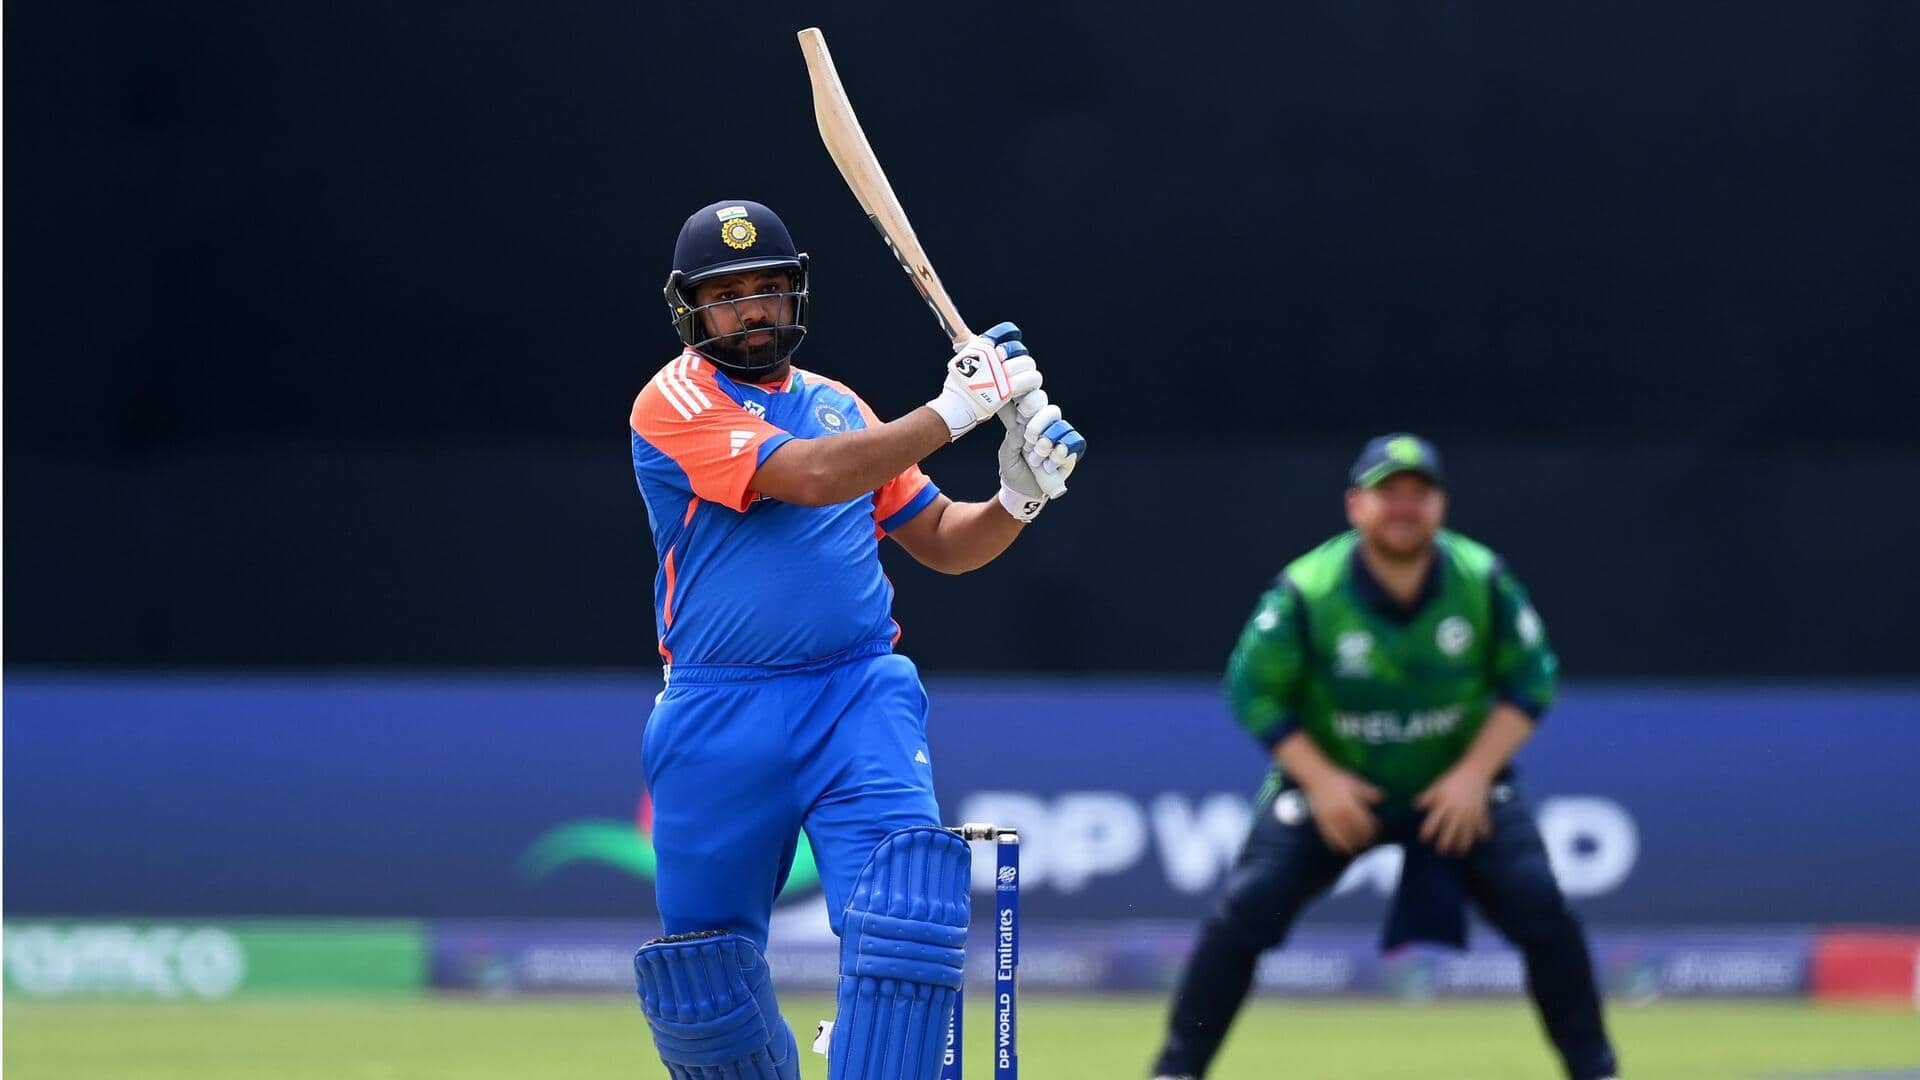 रोहित शर्मा का टी-20 विश्व कप के नॉकआउट मैचों में कैसा रहा है प्रदर्शन? जानिए आंकड़े